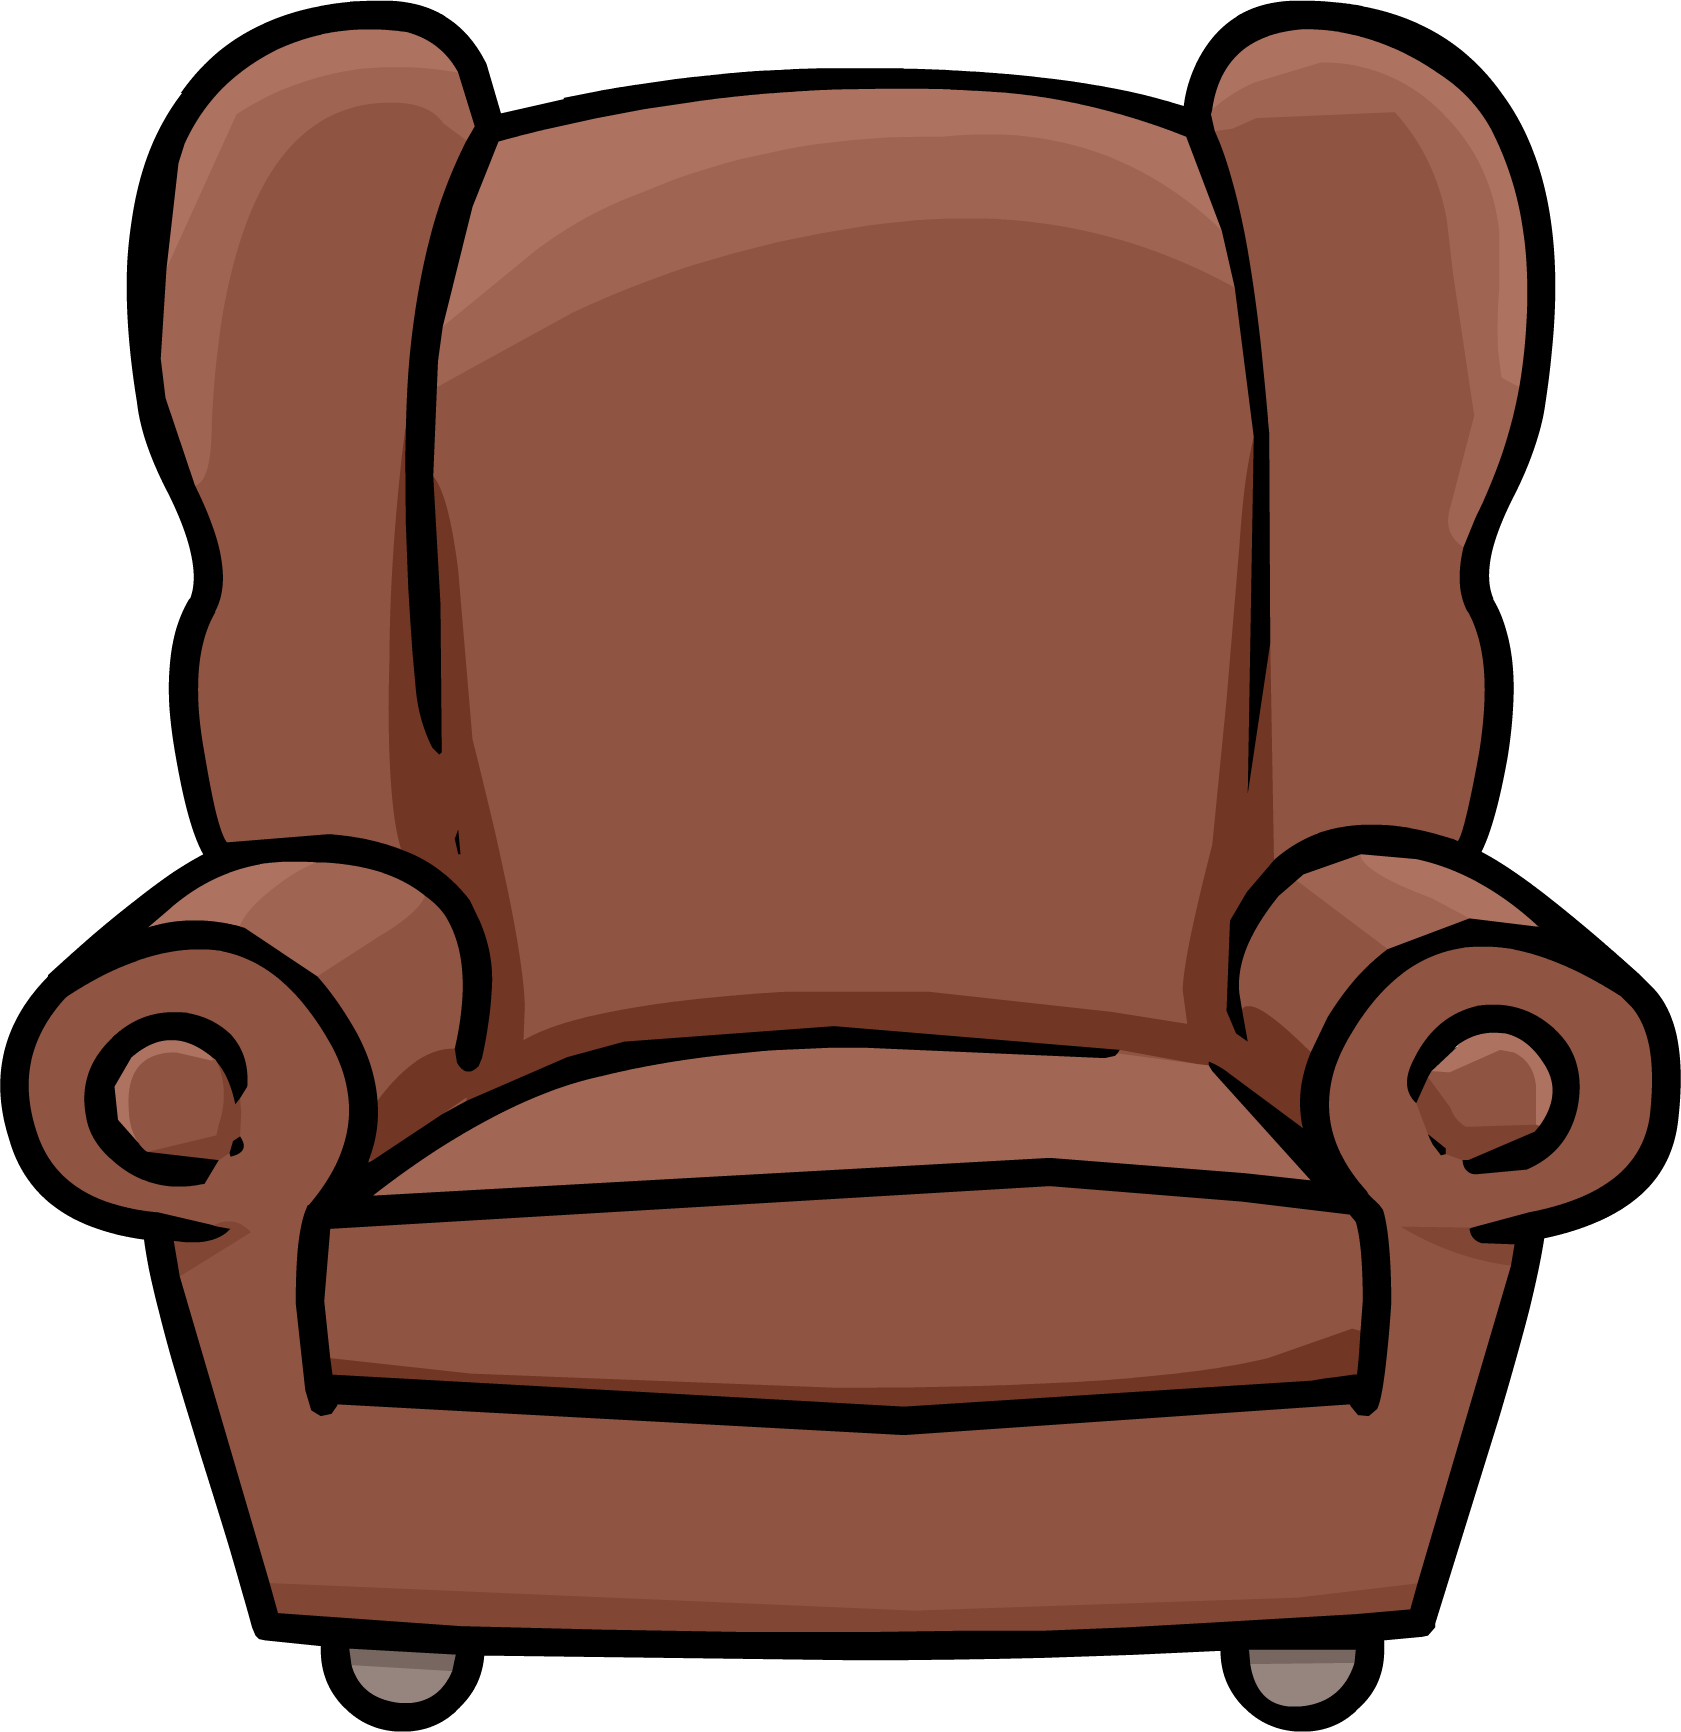 Кресло фото для детей на прозрачном фоне